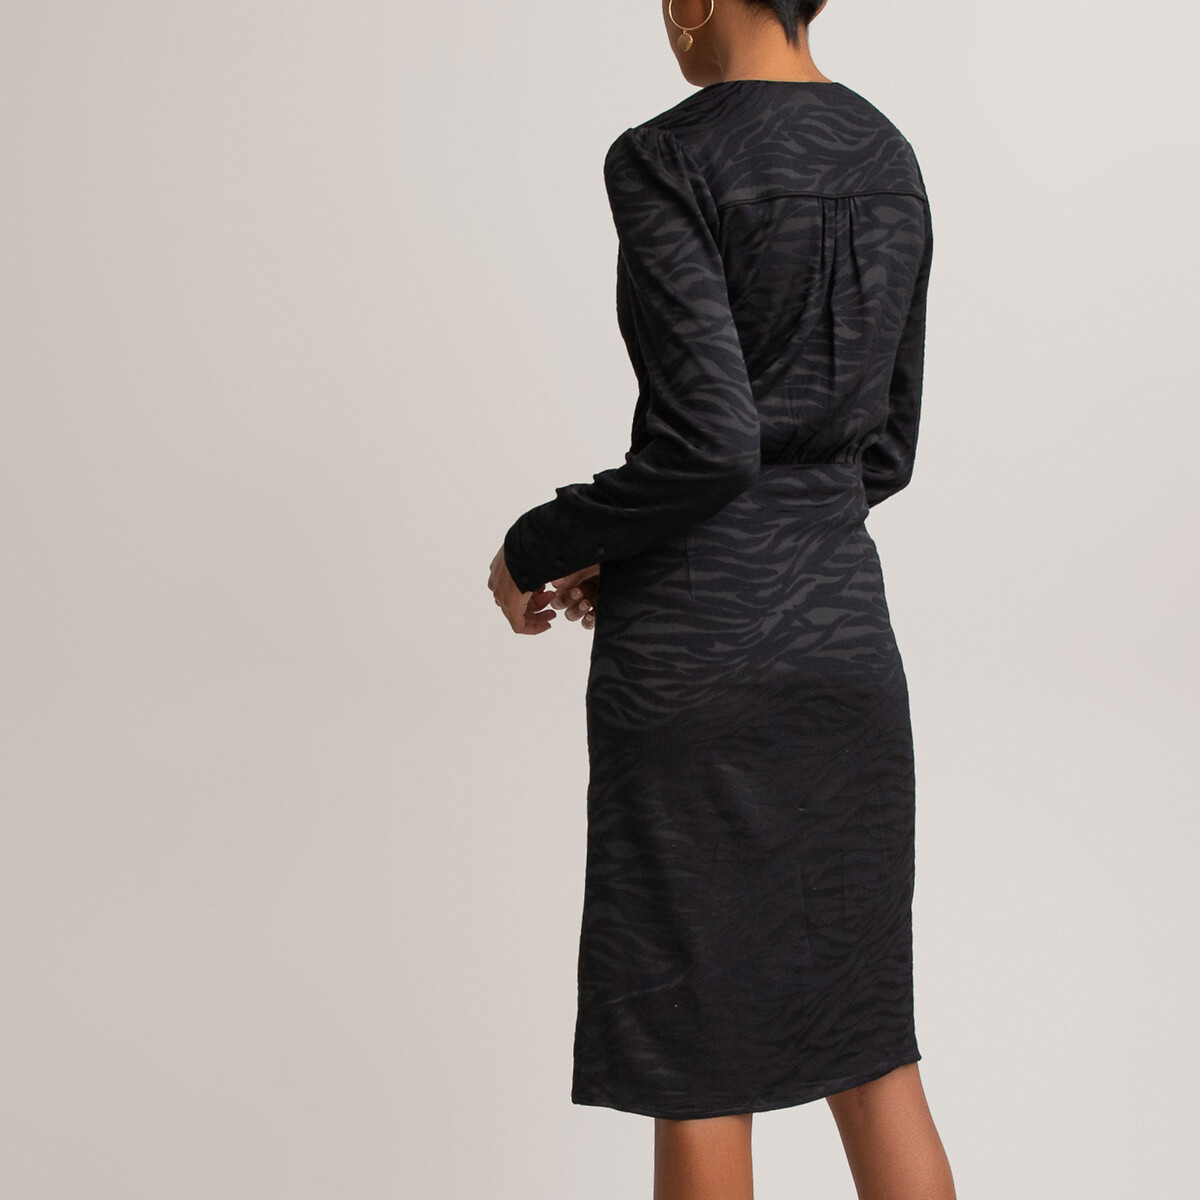 Платье LaRedoute С запахом с длинными рукавами 46 (FR) - 52 (RUS) черный, размер 46 (FR) - 52 (RUS) С запахом с длинными рукавами 46 (FR) - 52 (RUS) черный - фото 4